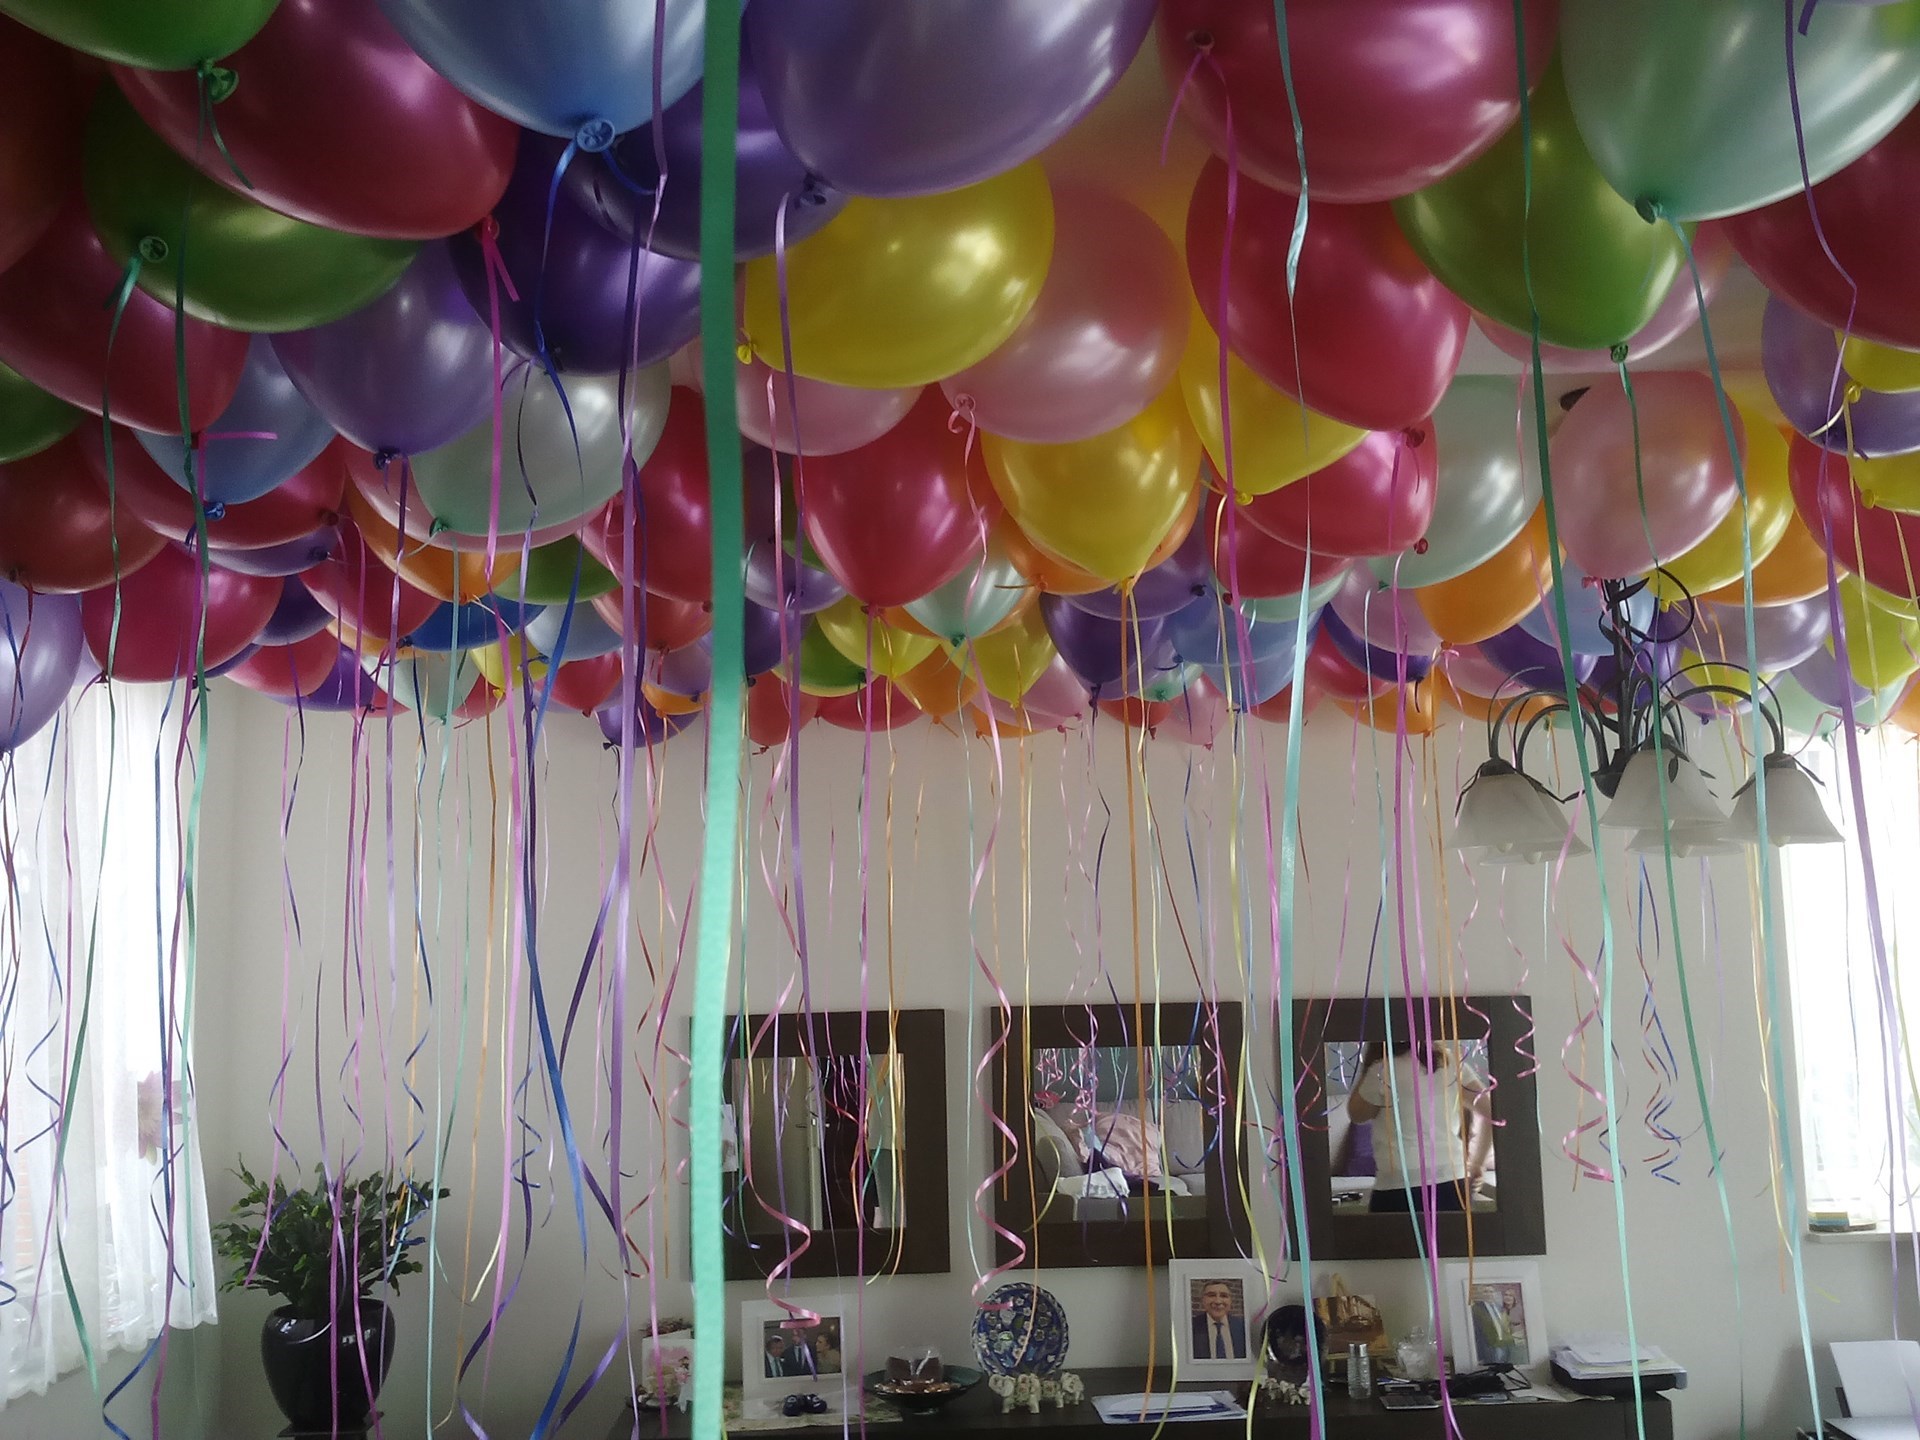 helium ballonnen tegen plafond voor huwelijks aanzoek